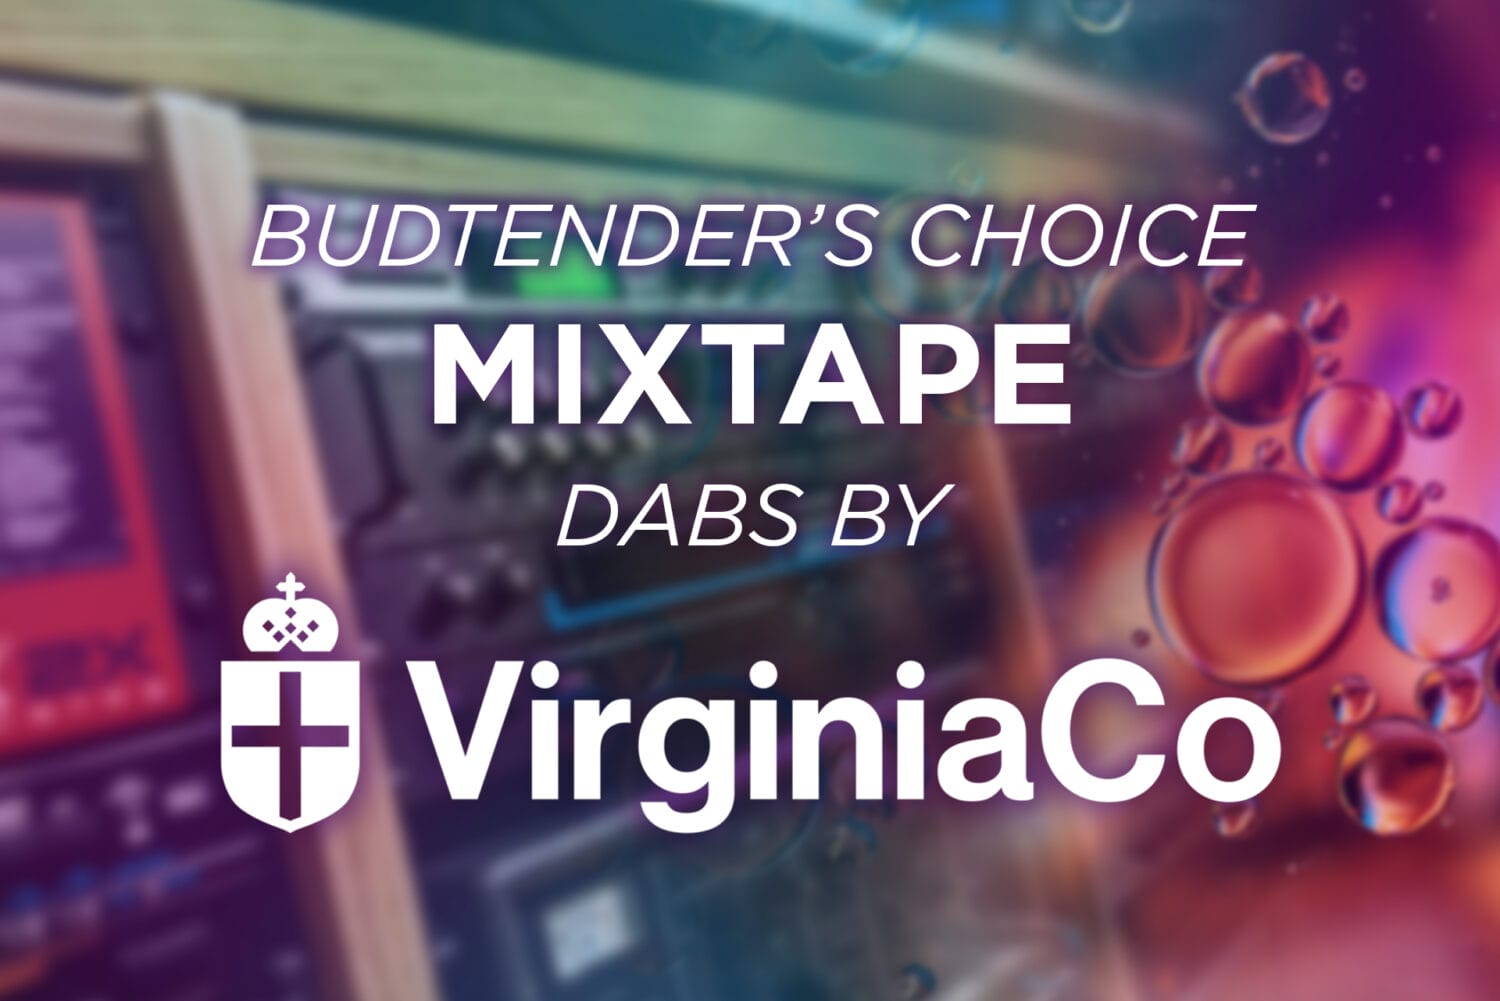 Virginia Co Mixtape